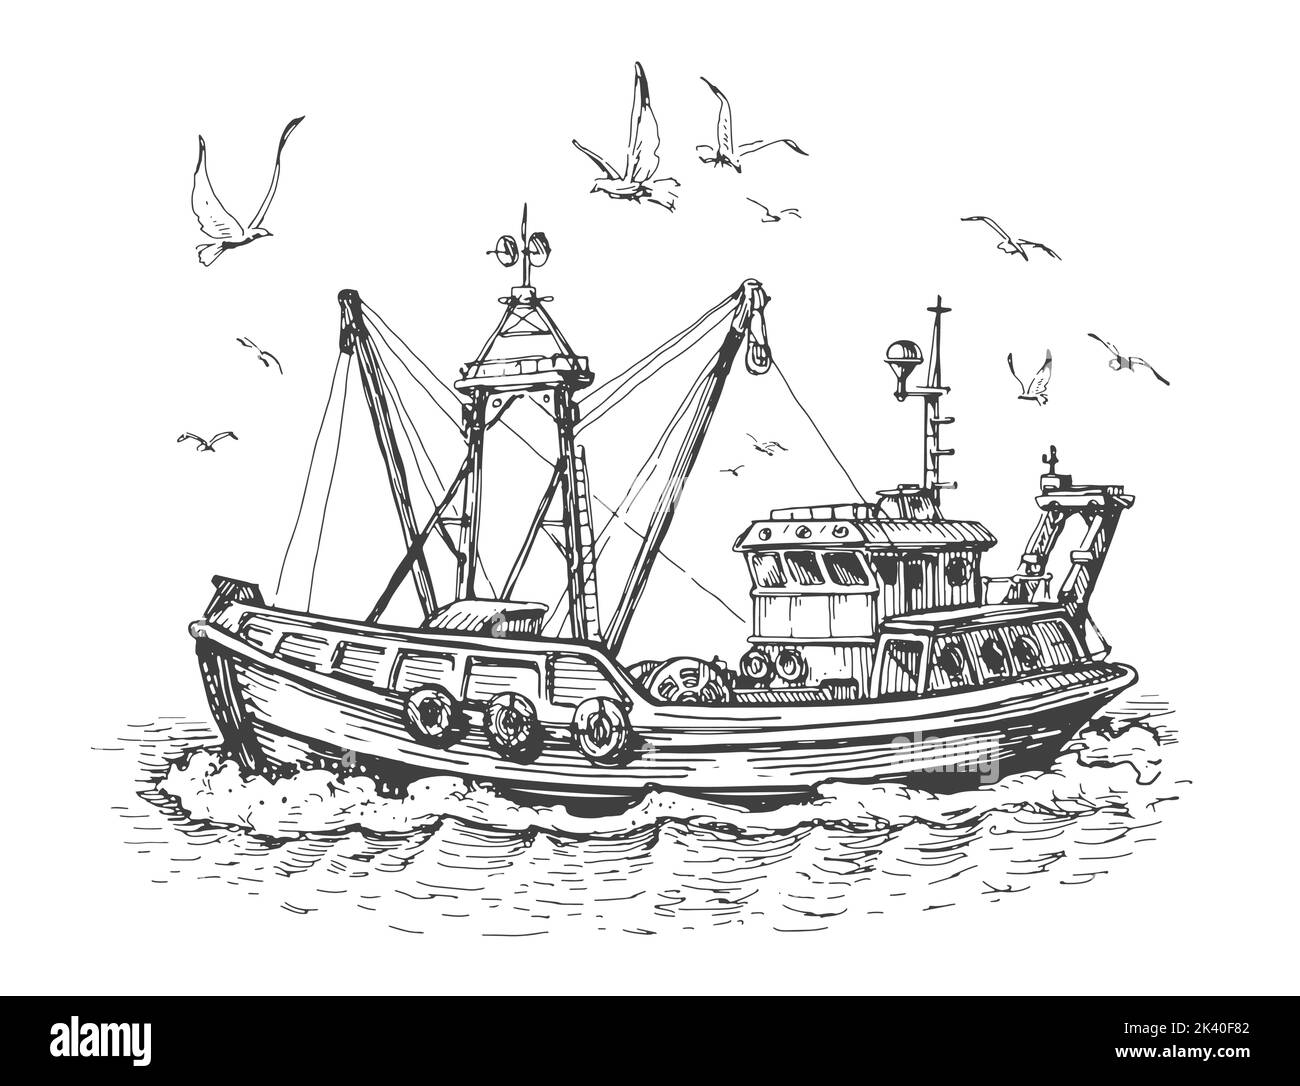 Fischerboot im Meer. Möwen und Schiff, Schiff auf dem Wasser. Seascape, Fischerei Skizze Vektor-Illustration Stock Vektor